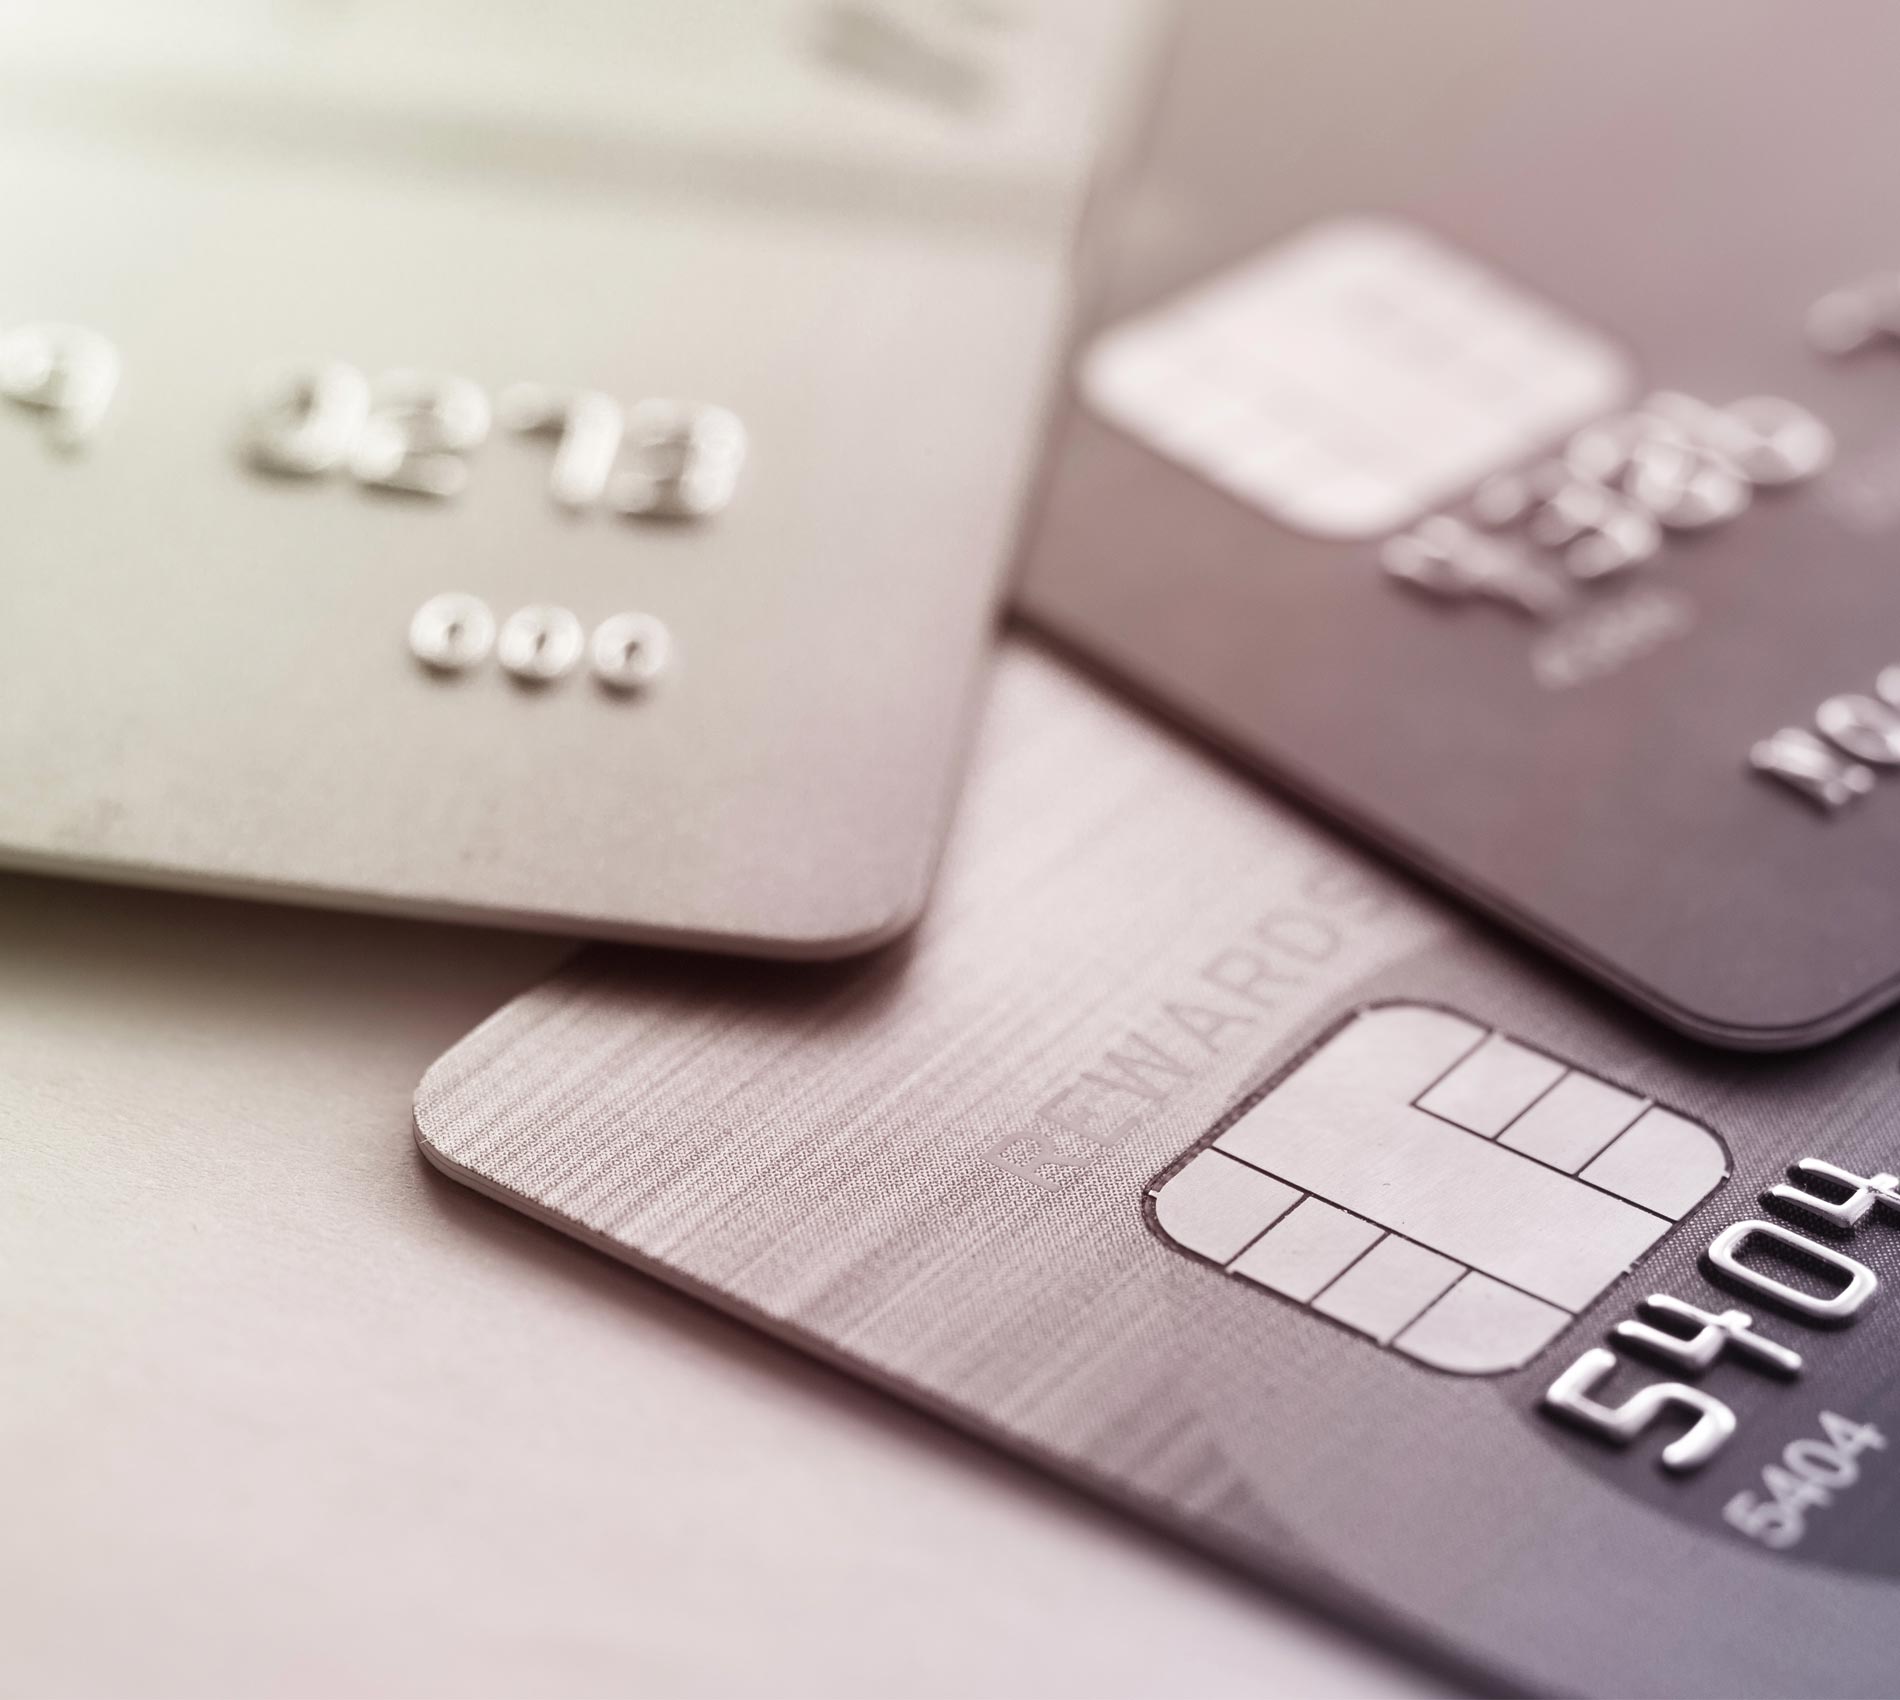 PagBrasil lidera em pagamentos online com cartões de débito